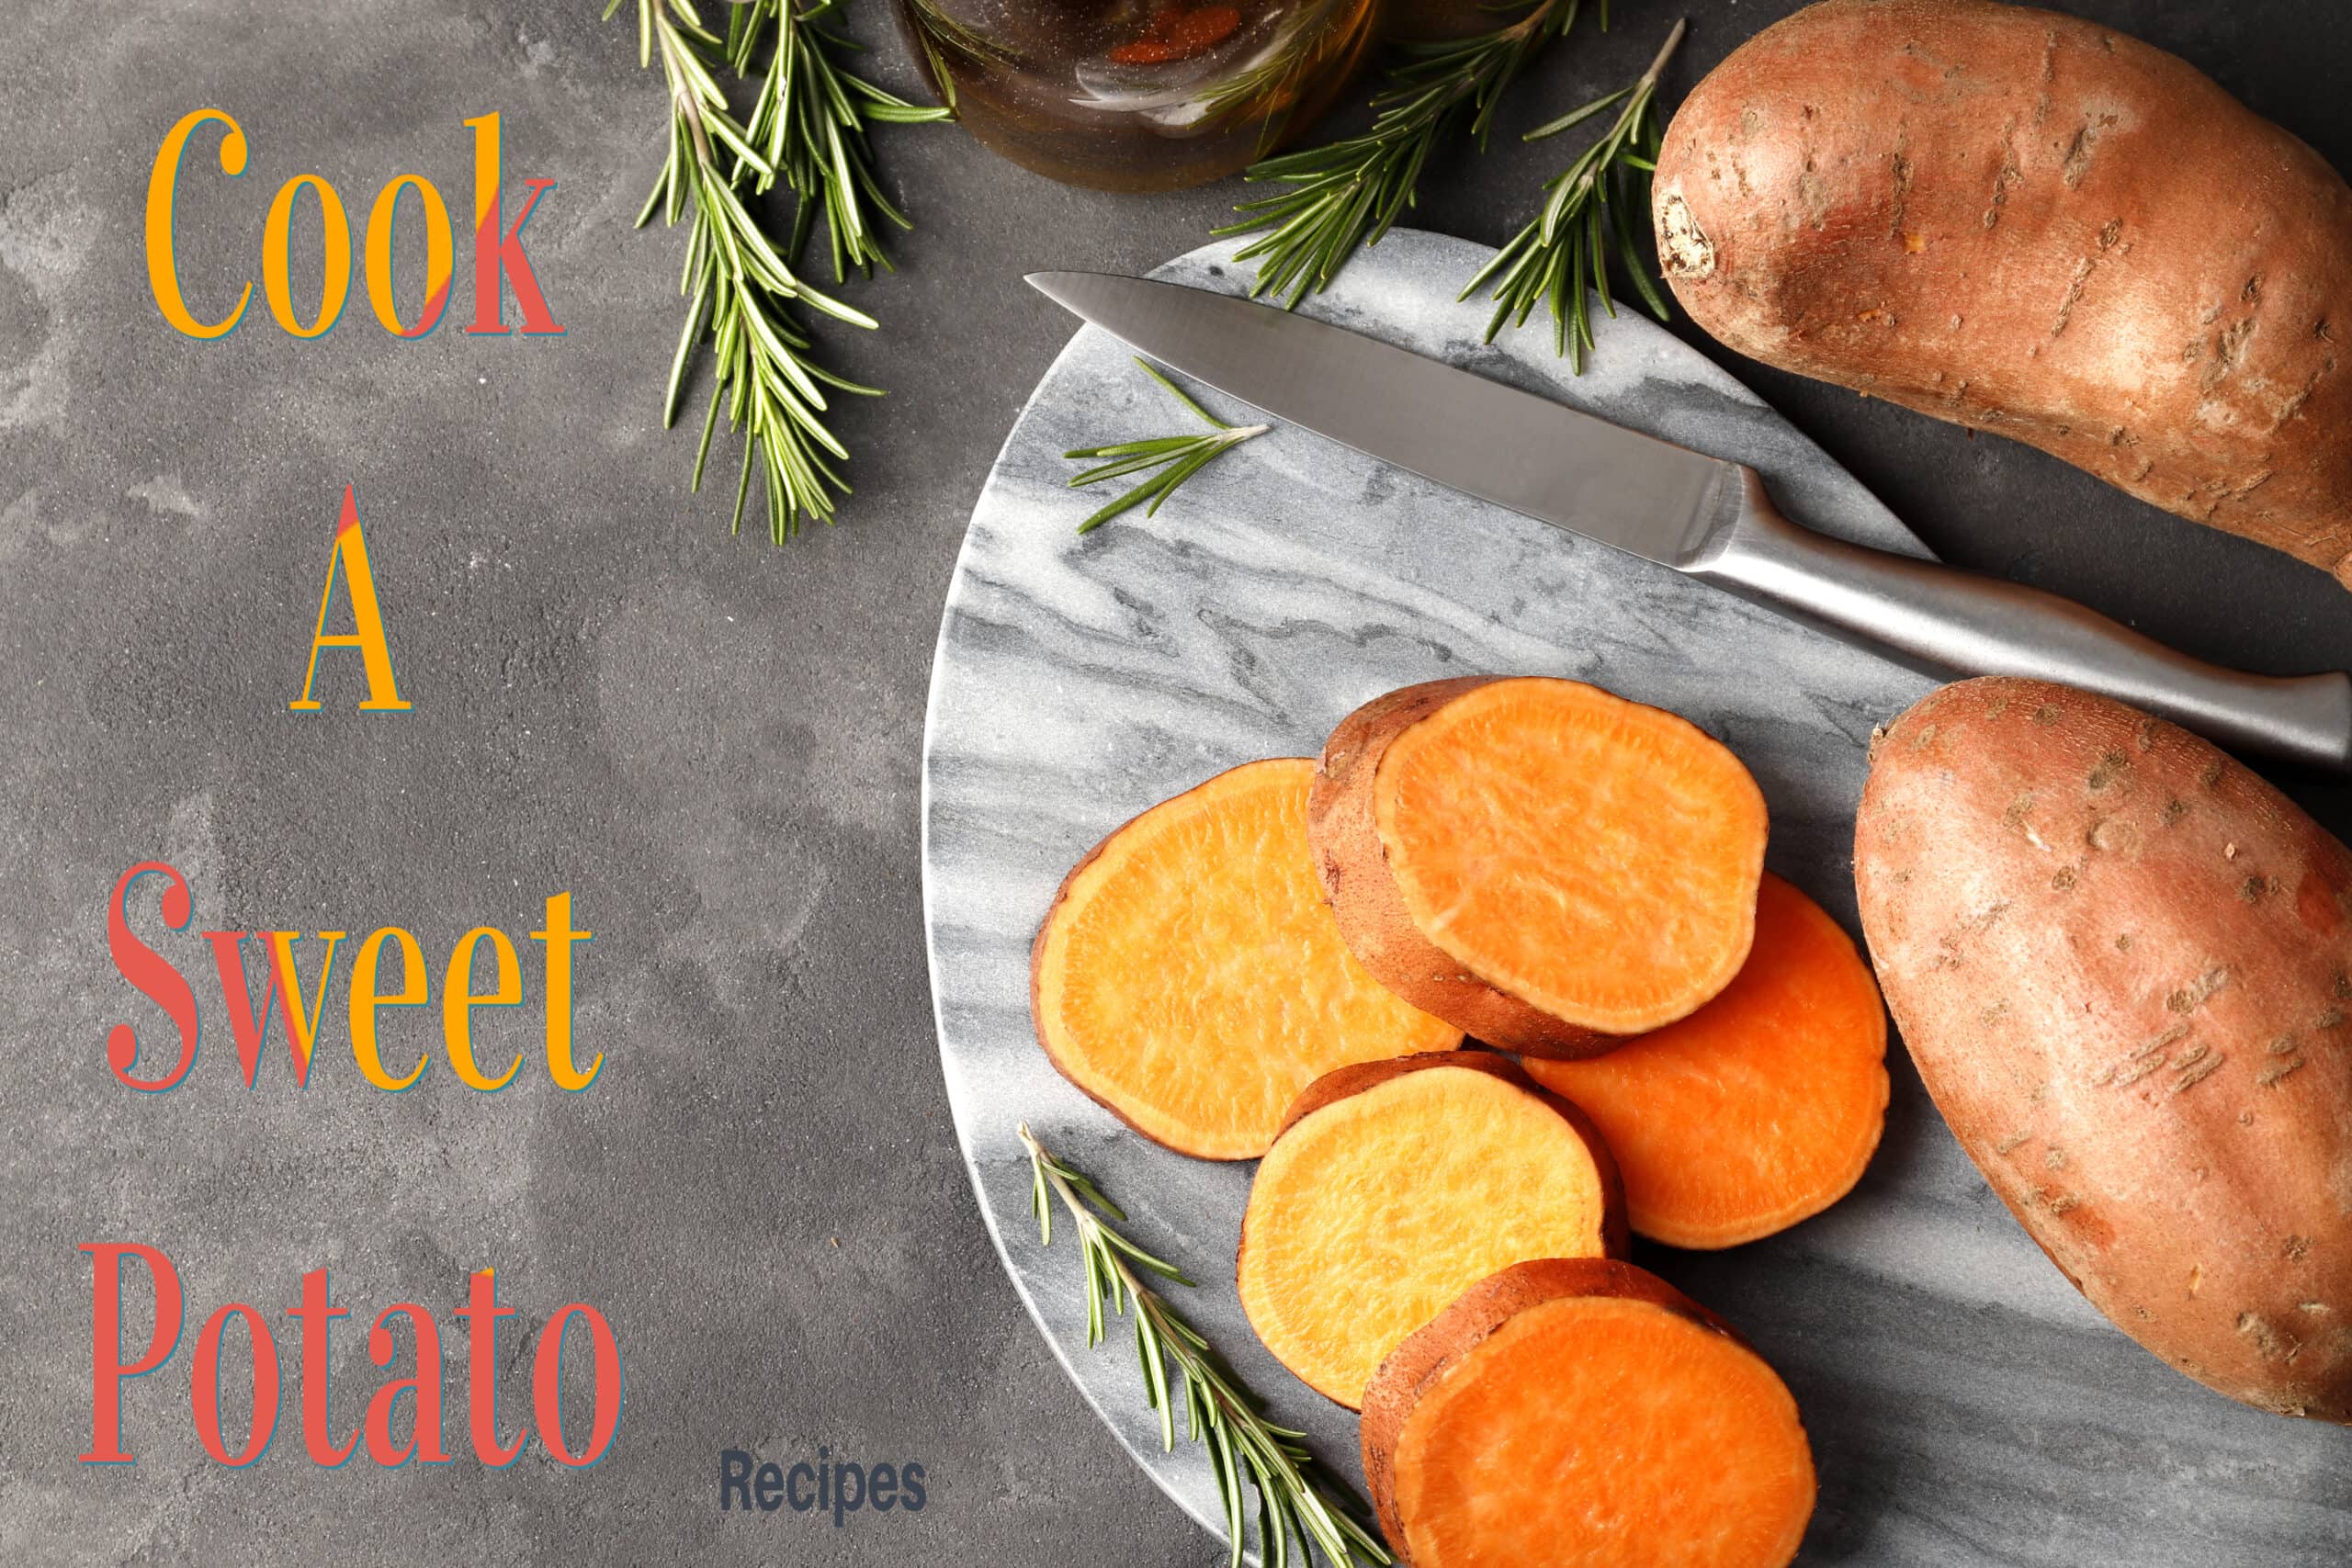 Cook a Sweet Potato Recipes